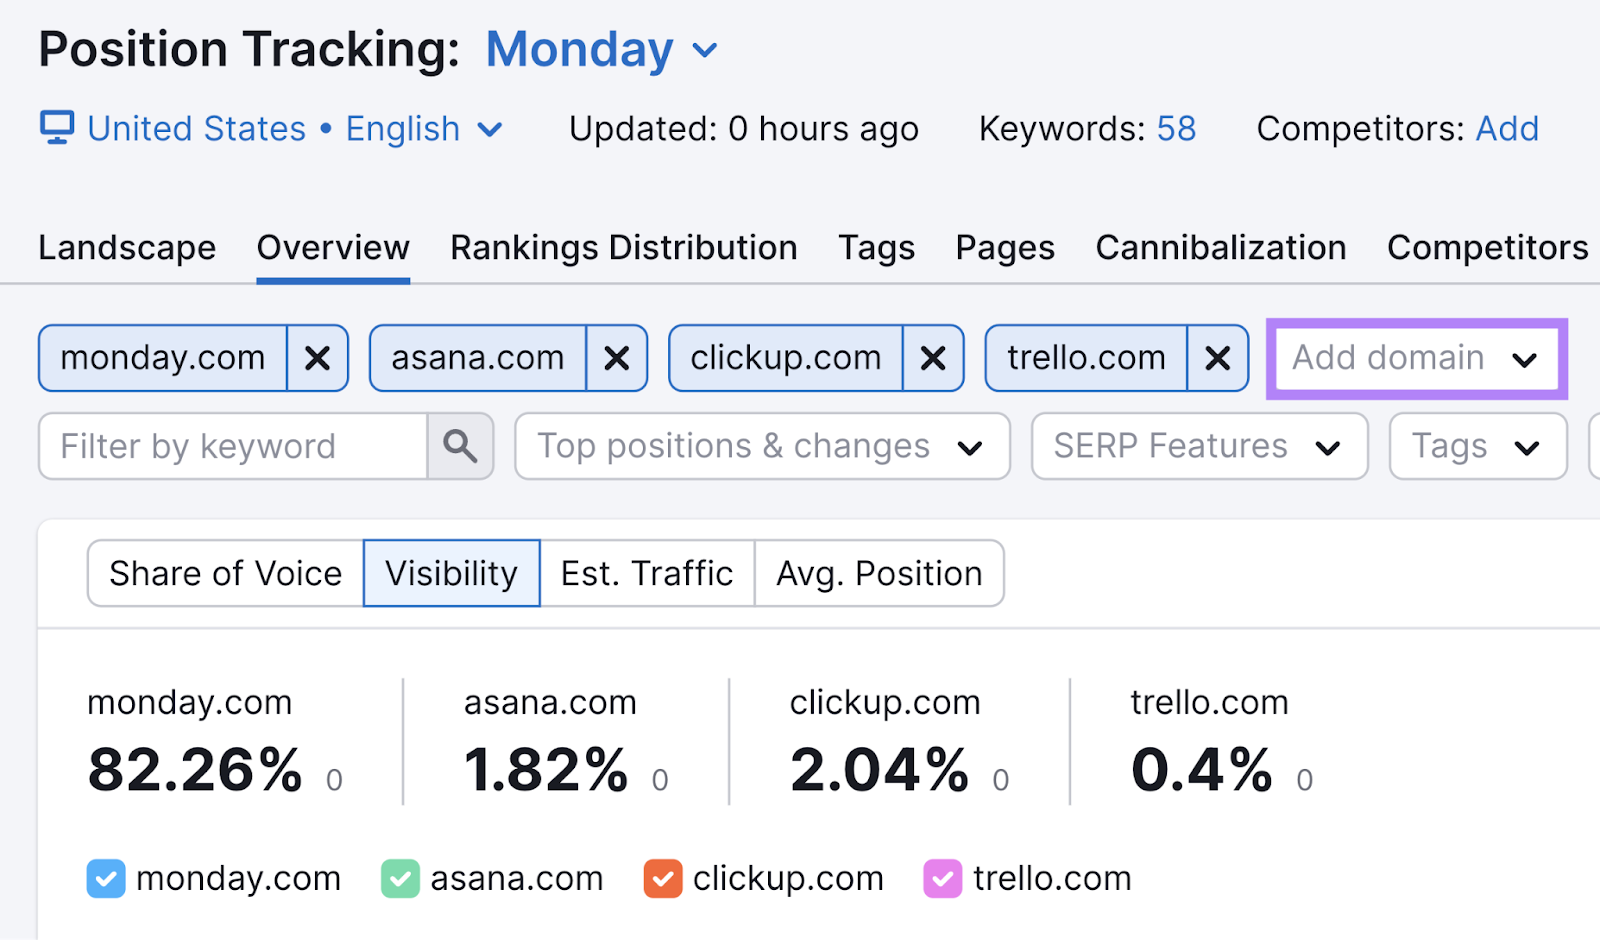 "monday.com" "asana.com" "clickup.com" and "trello.com" domains entered into the Position Tracking tool